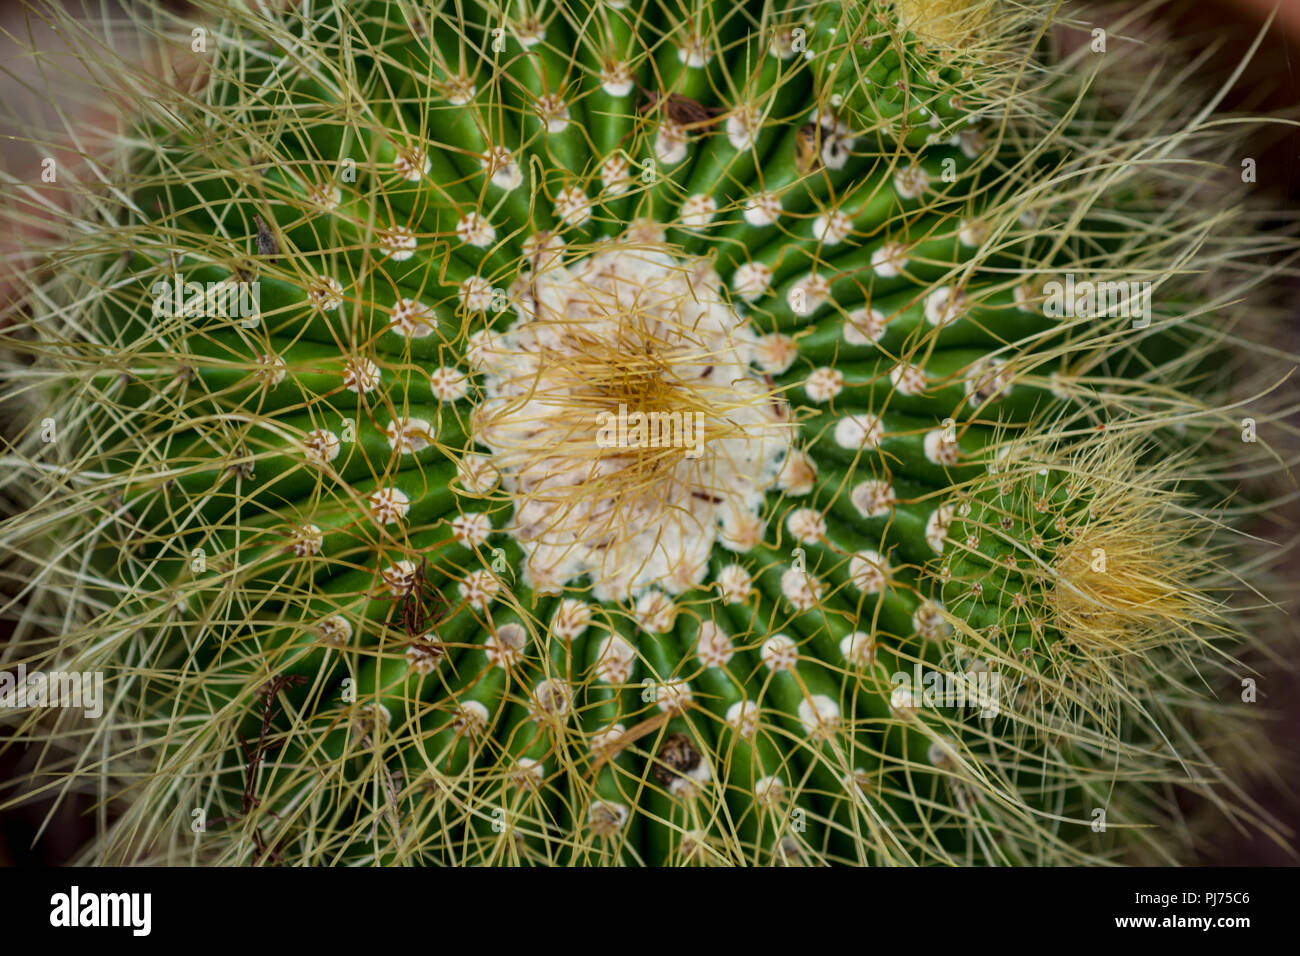 Cactus plants Stock Photo